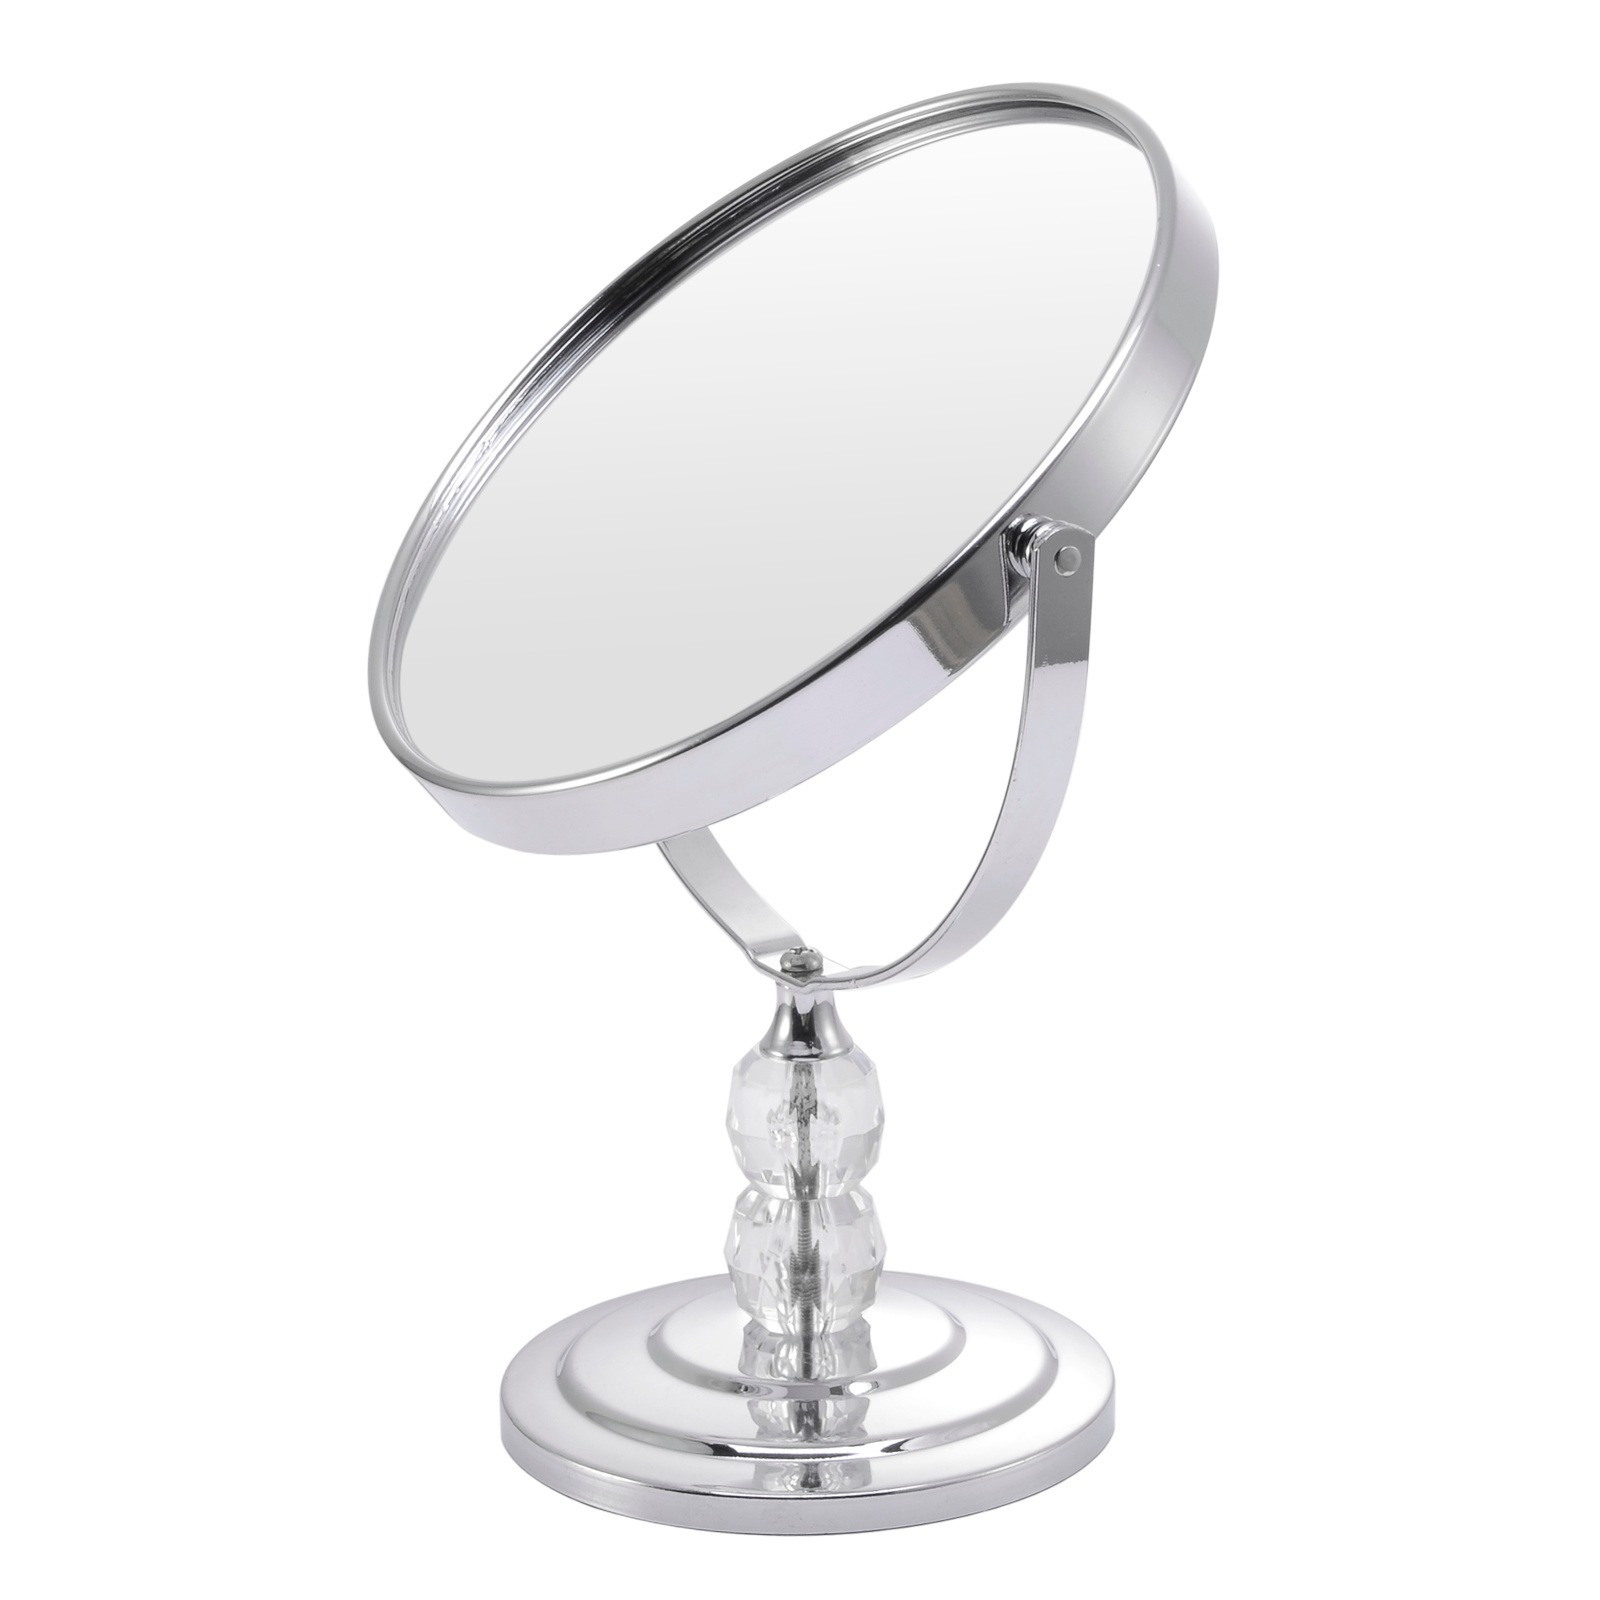 台式金属镜子桌面1:2放大功能梳妆镜双面可旋转美容化妆镜厂家定做